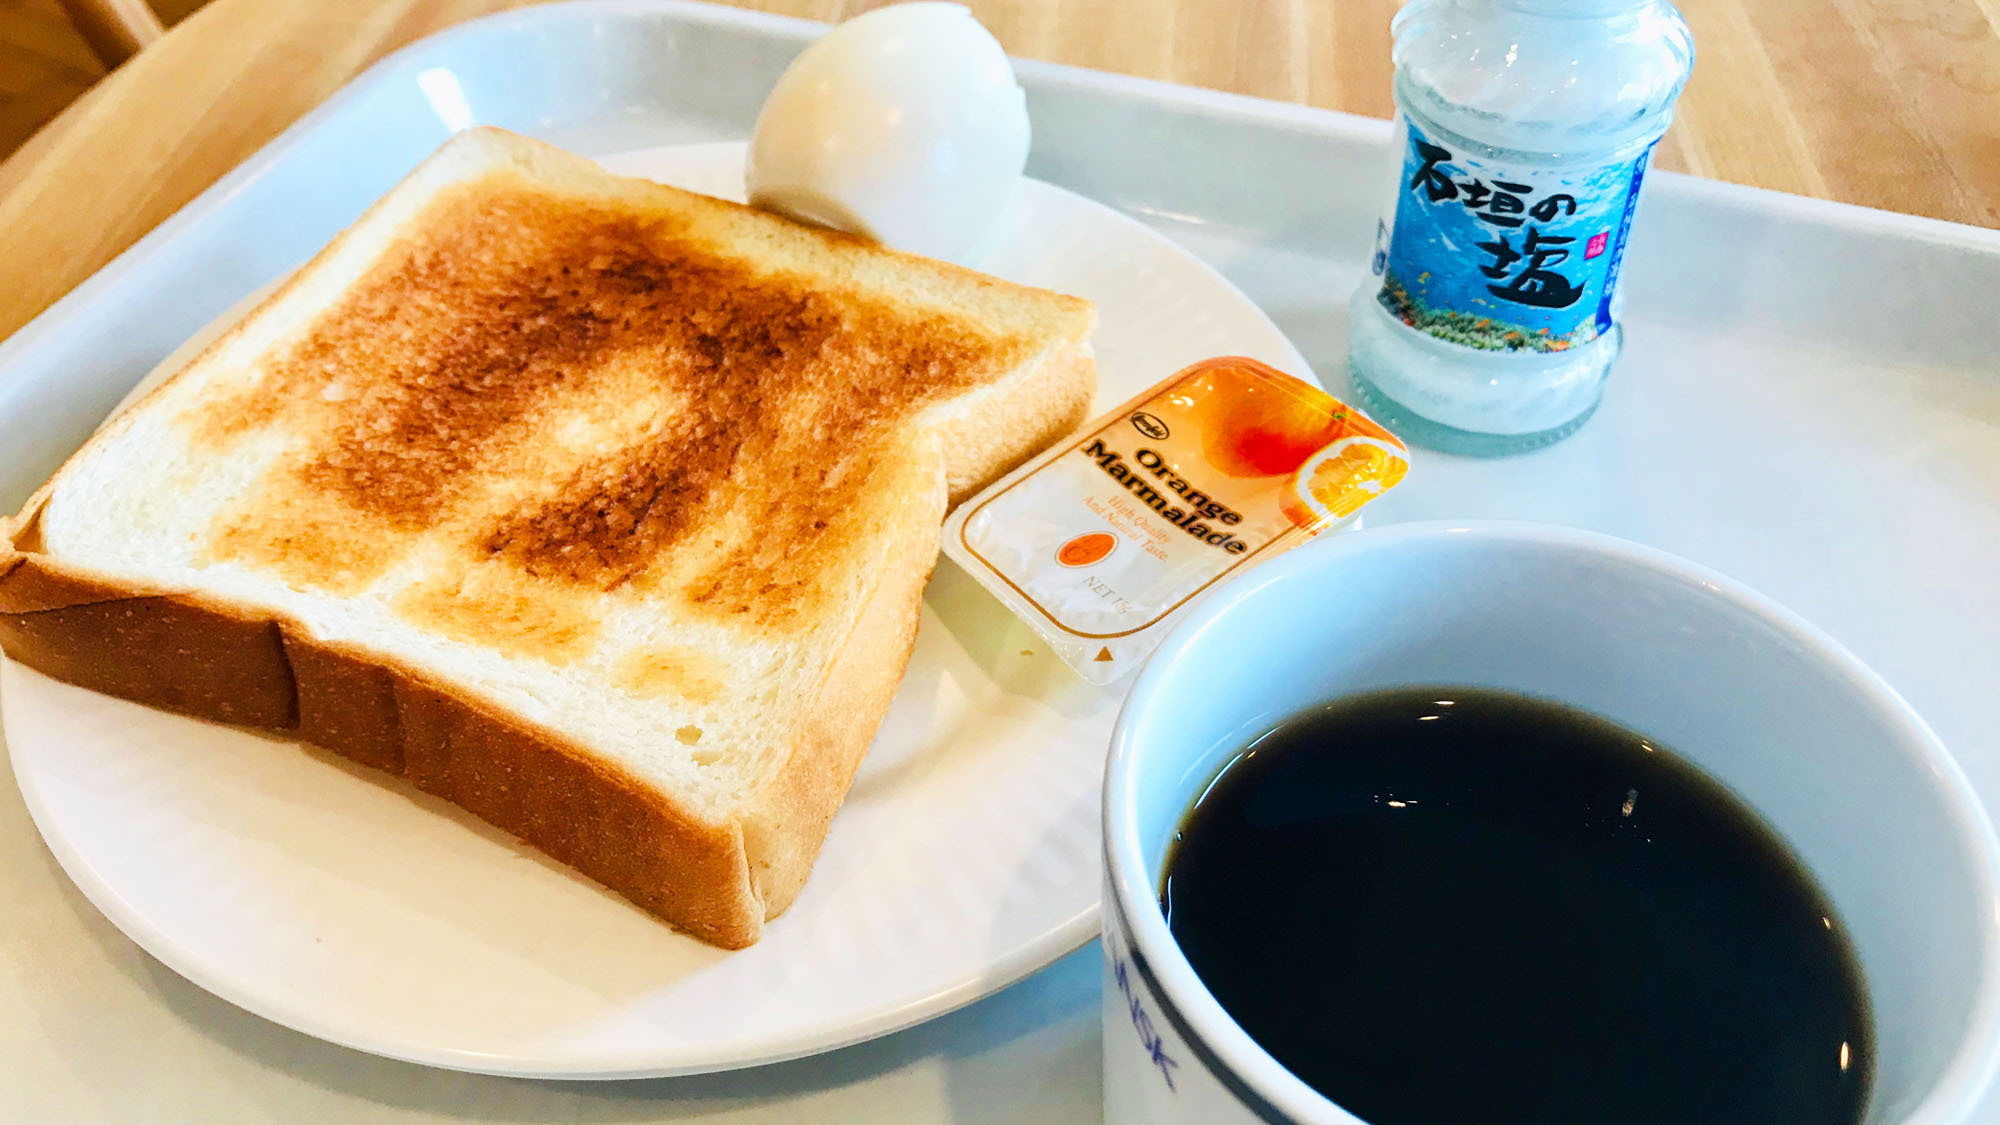 【軽朝食】朝の軽いお食事をお楽しみください